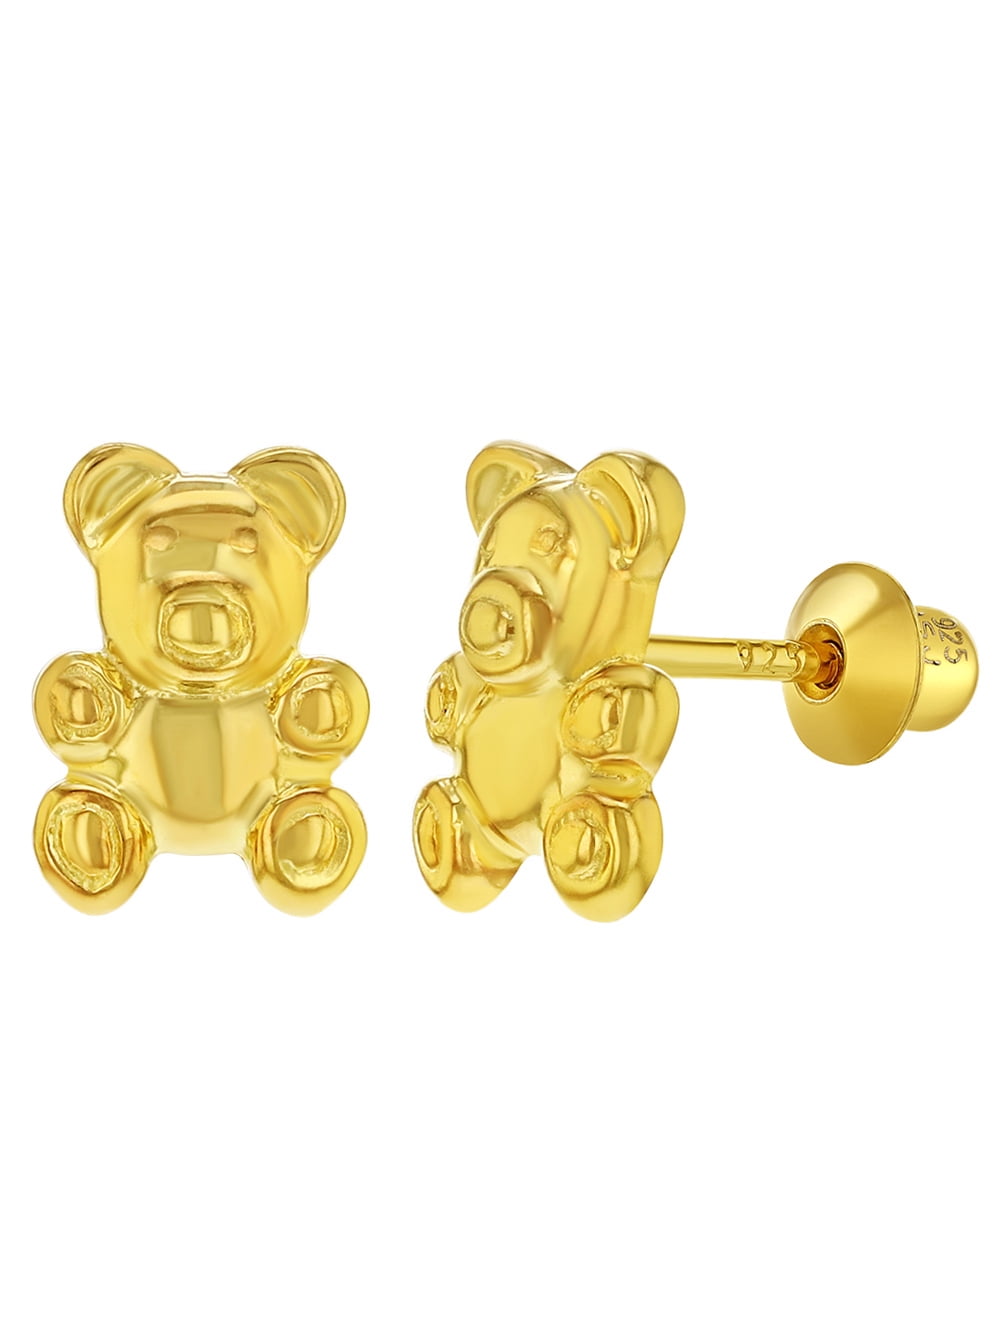 In Season Jewelry - 925 Sterling Silver Kids Children's Teddy Bear ...